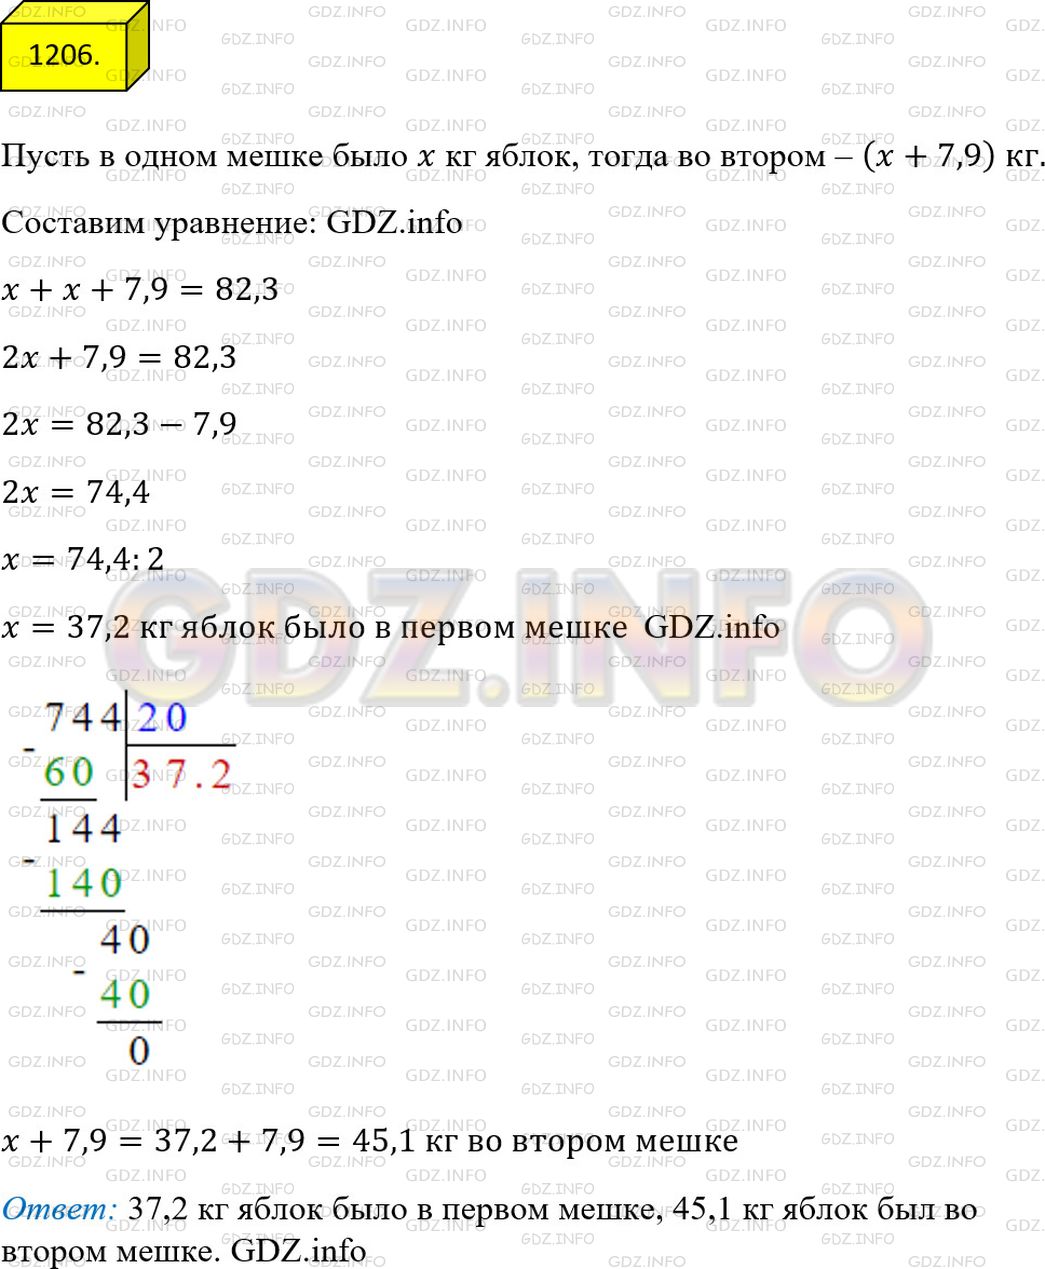 Фото ответа 4 на Задание 1206 из ГДЗ по Математике за 5 класс: А.Г. Мерзляк, В.Б. Полонский, М.С. Якир. 2014г.